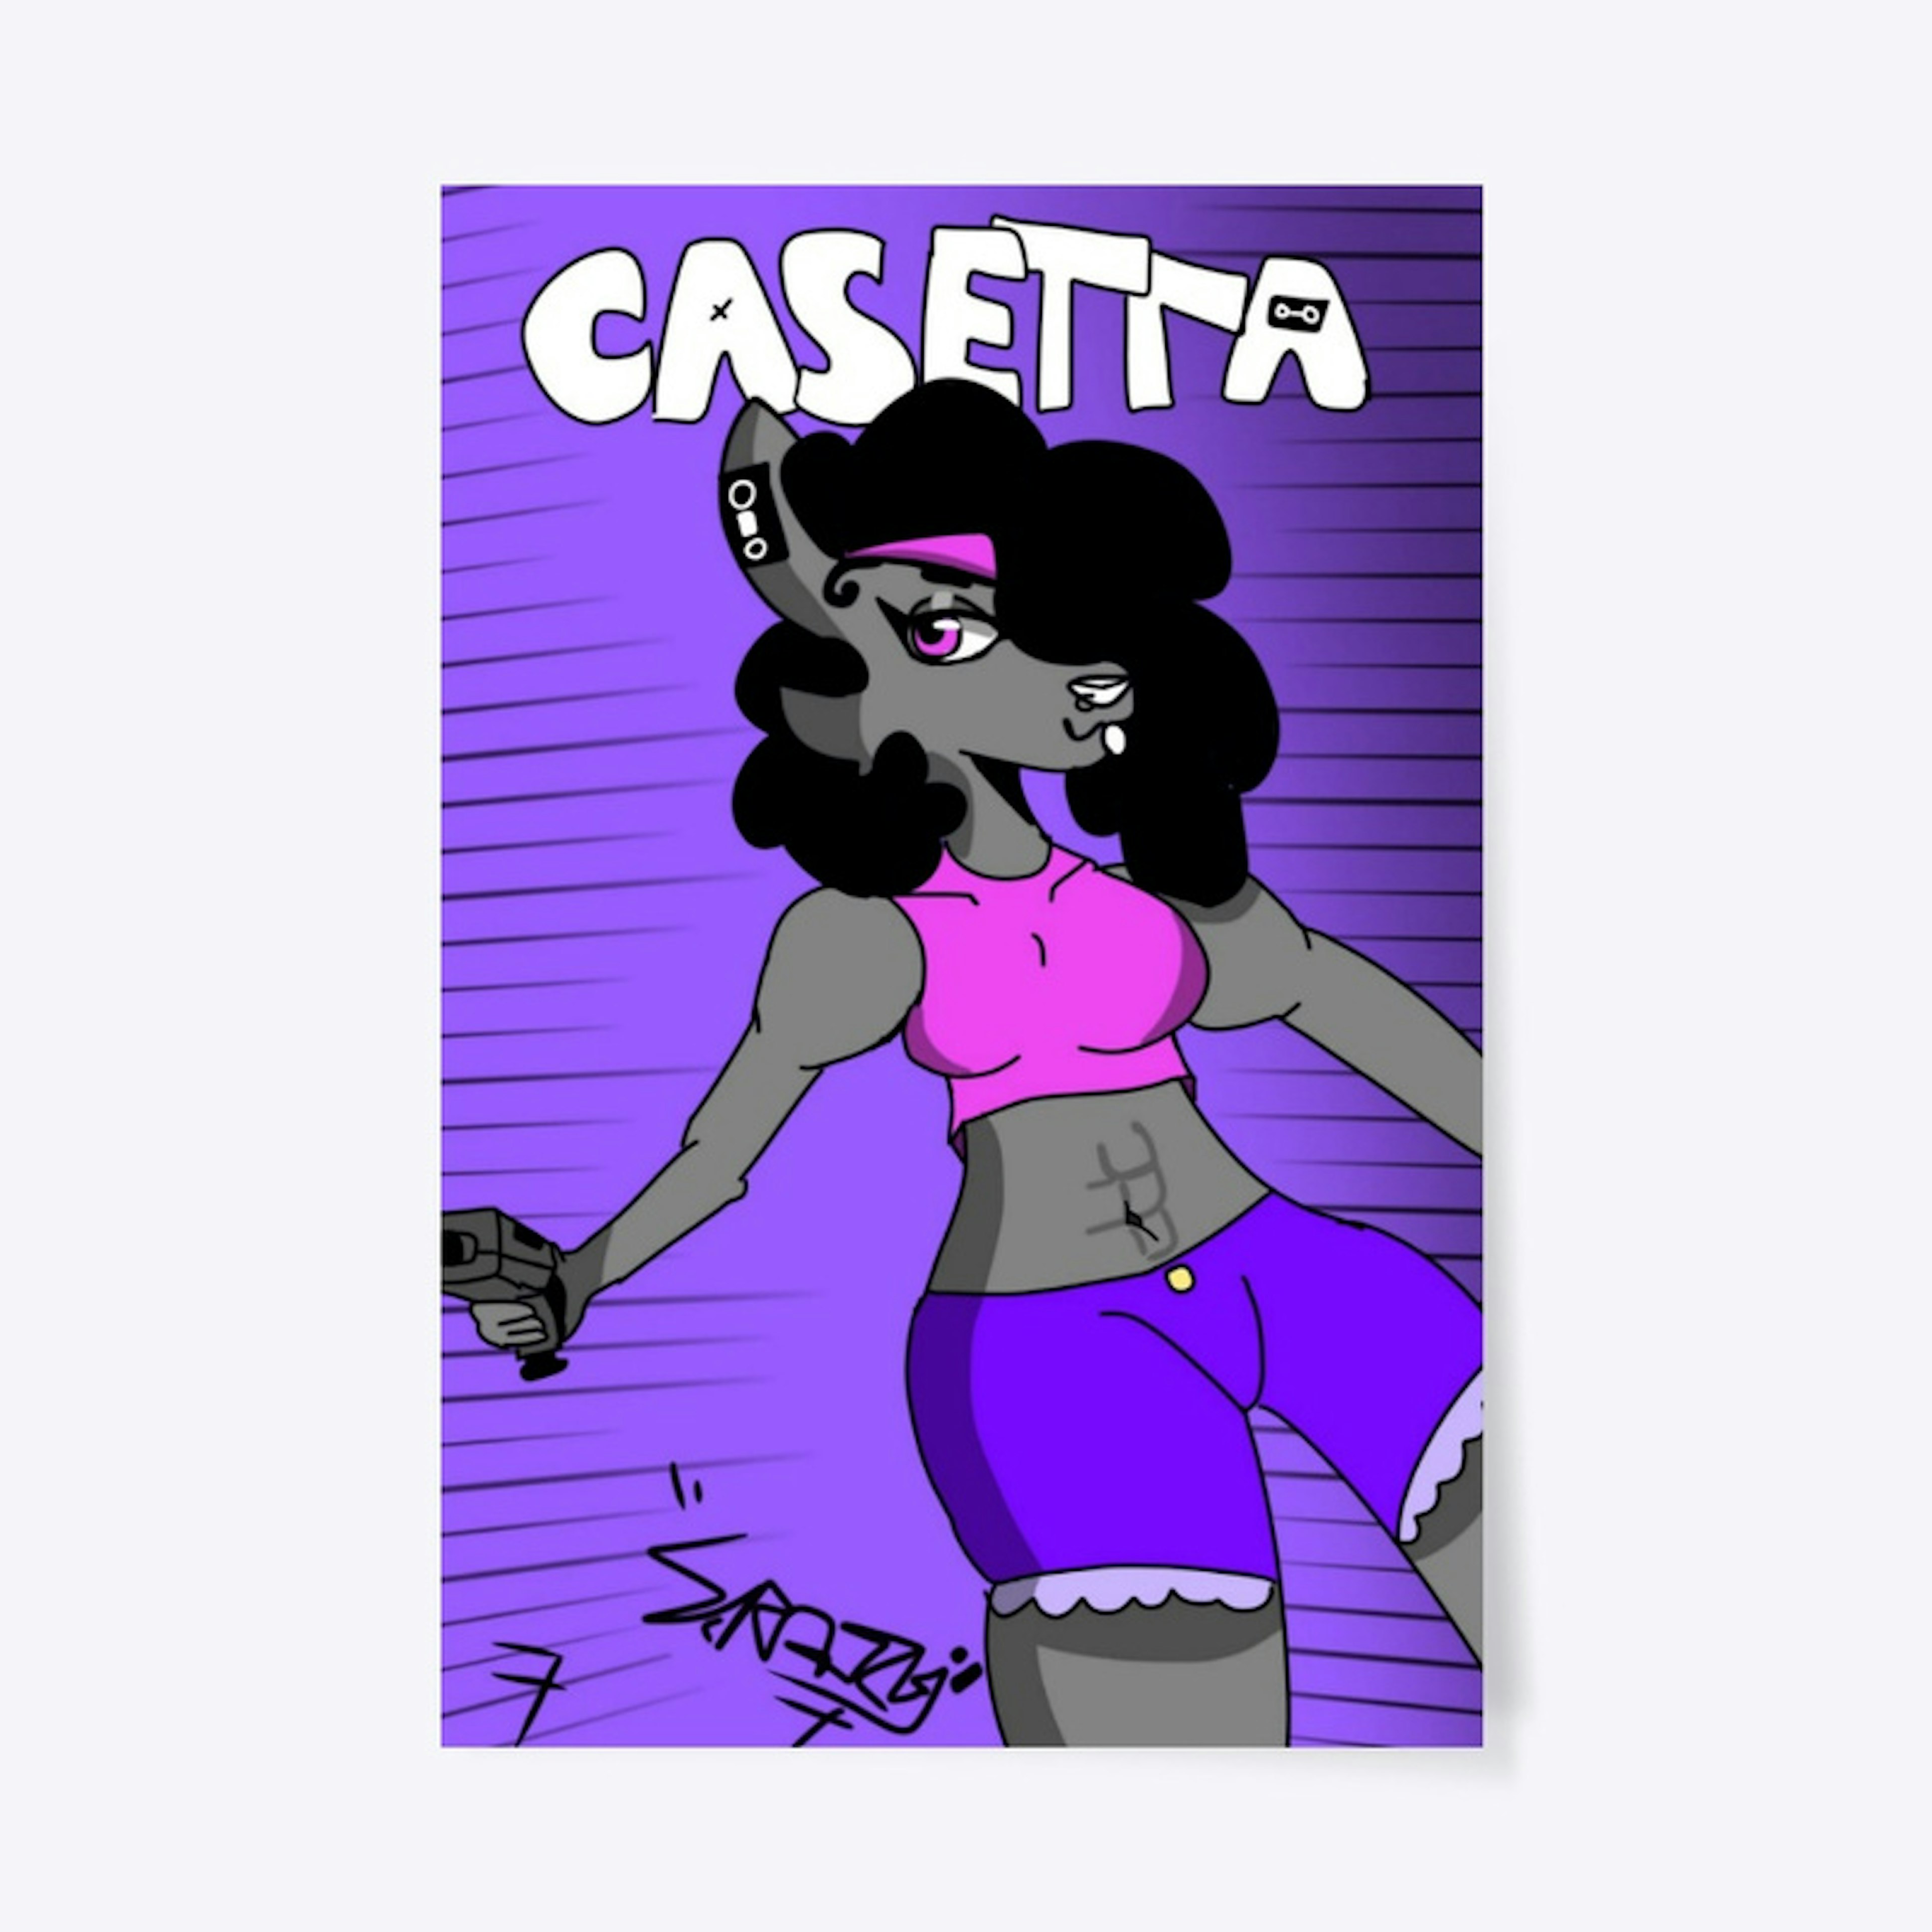 (TW: Guns) Casetta Poster